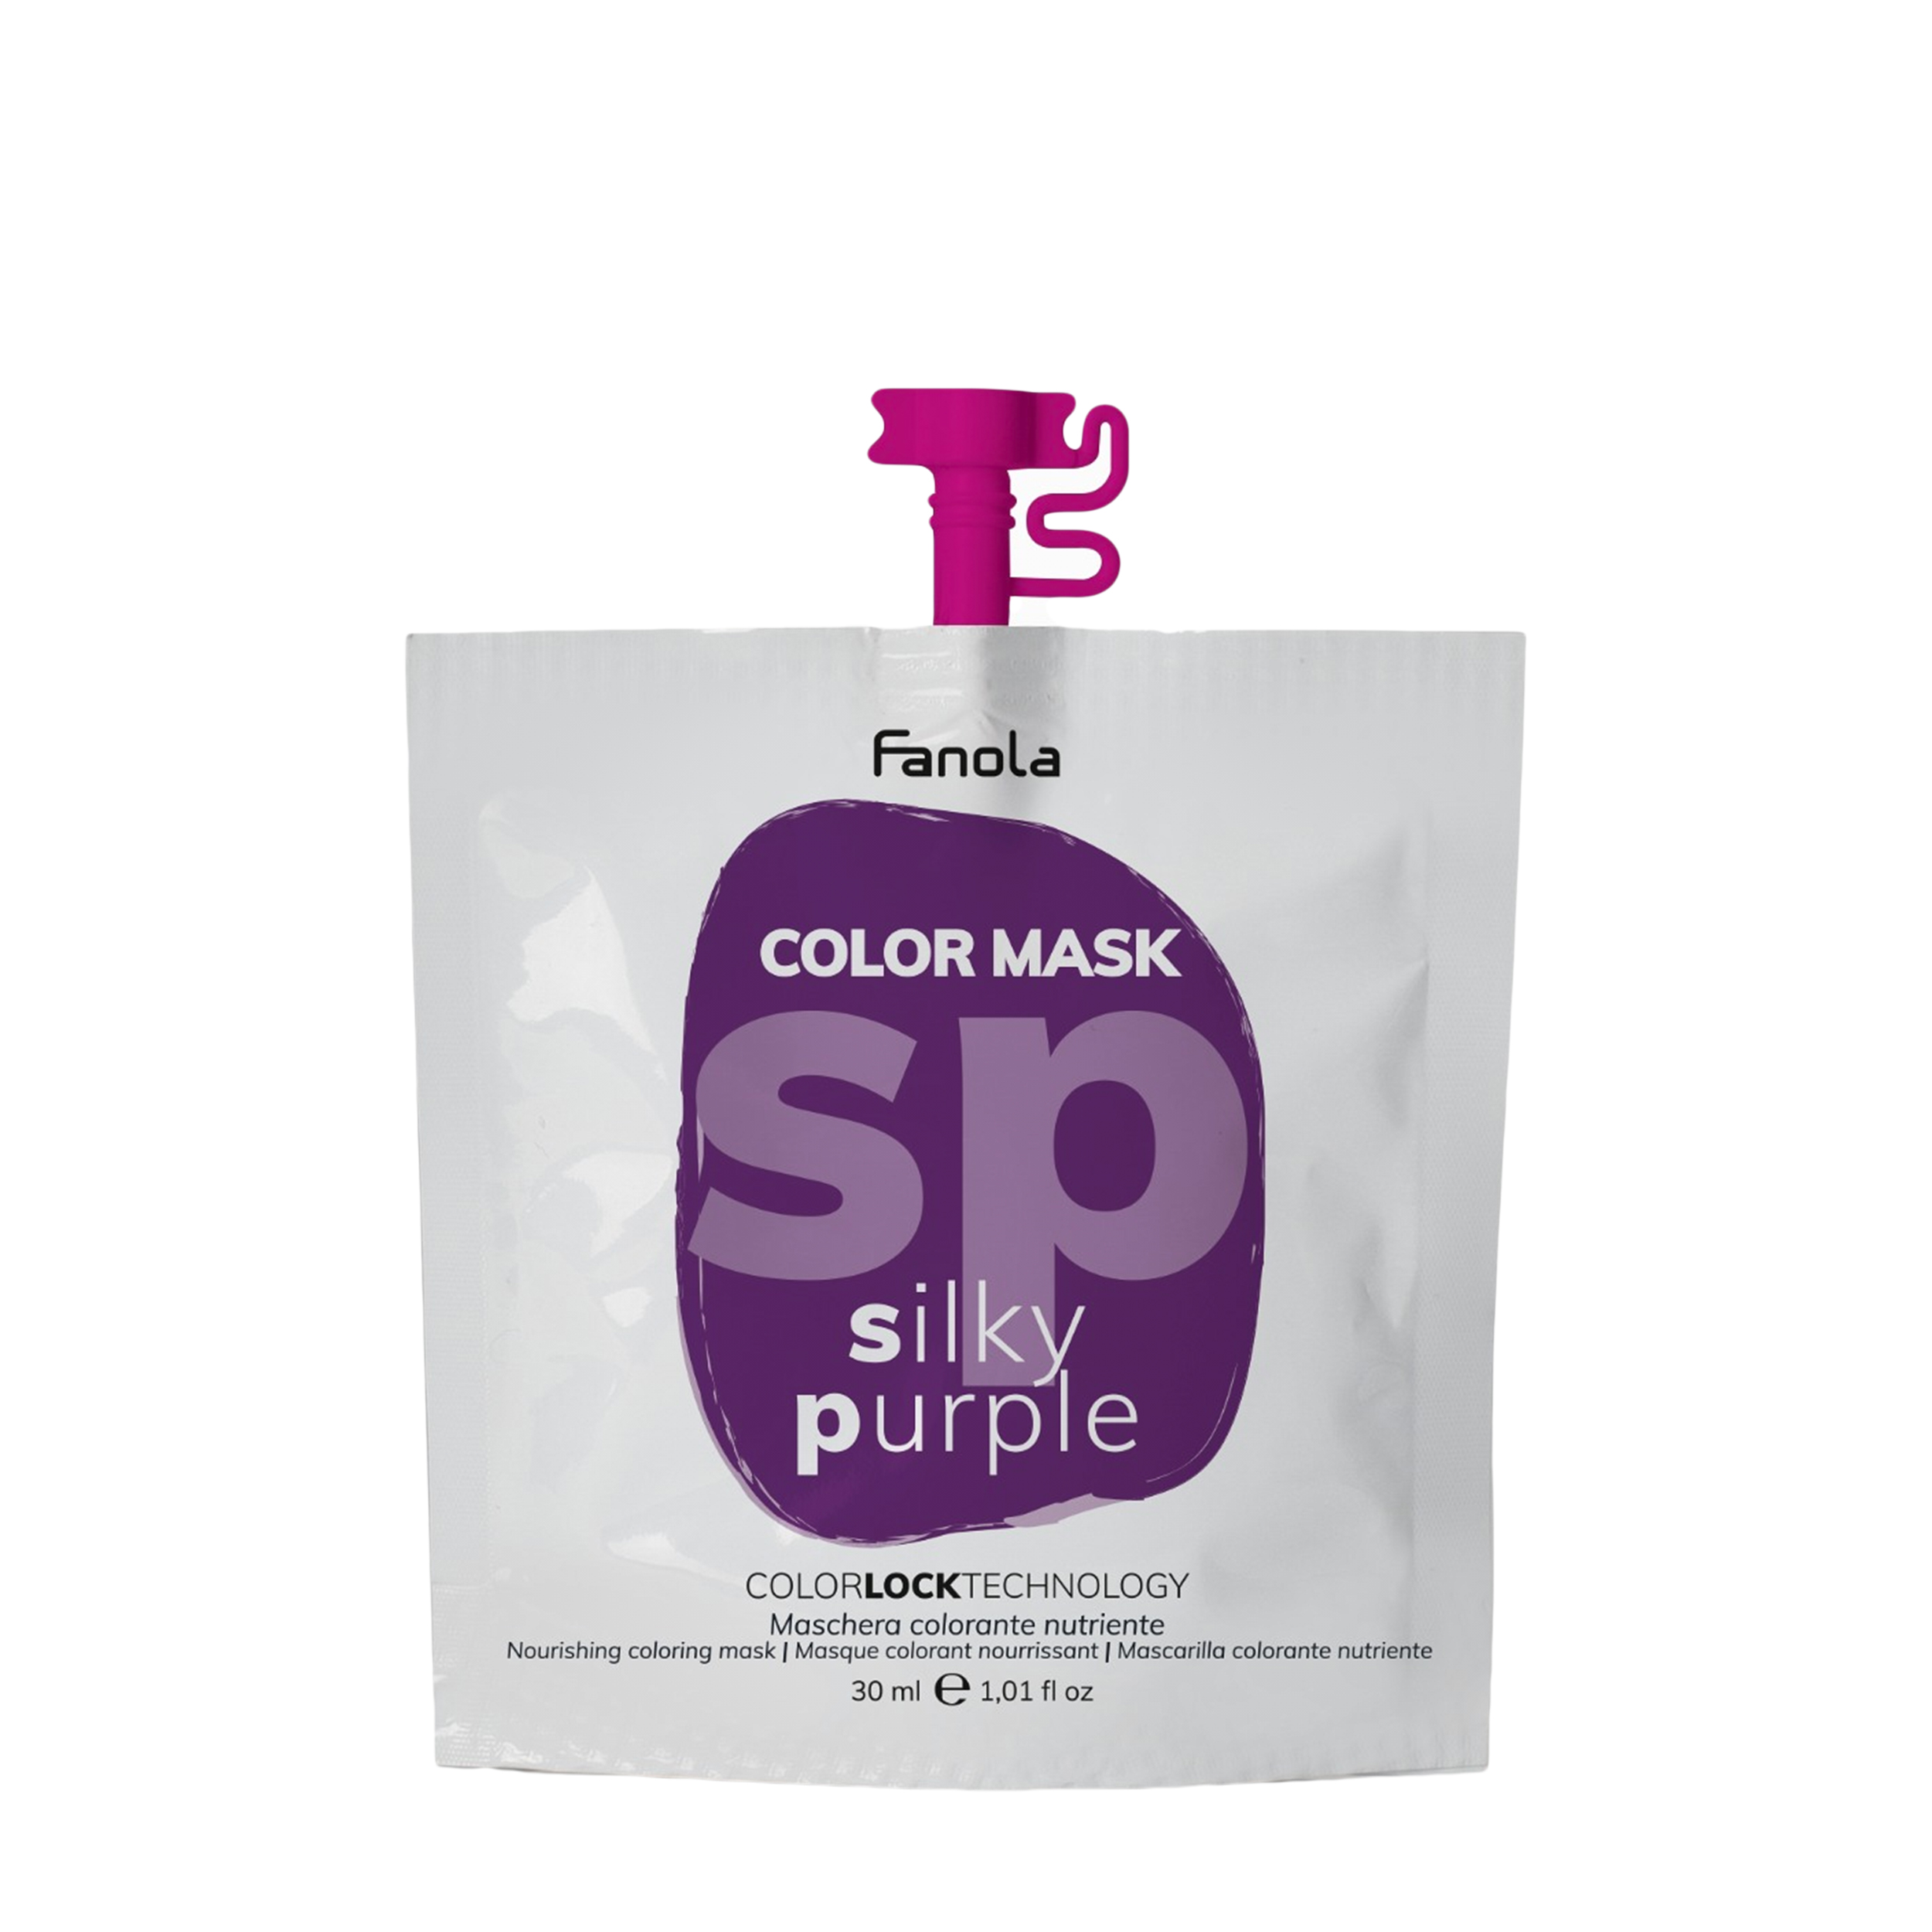 Купить Fanola Fanola Оттеночная маска для волос Fanola Color Mask фиолетовая, 30 мл 30 мл